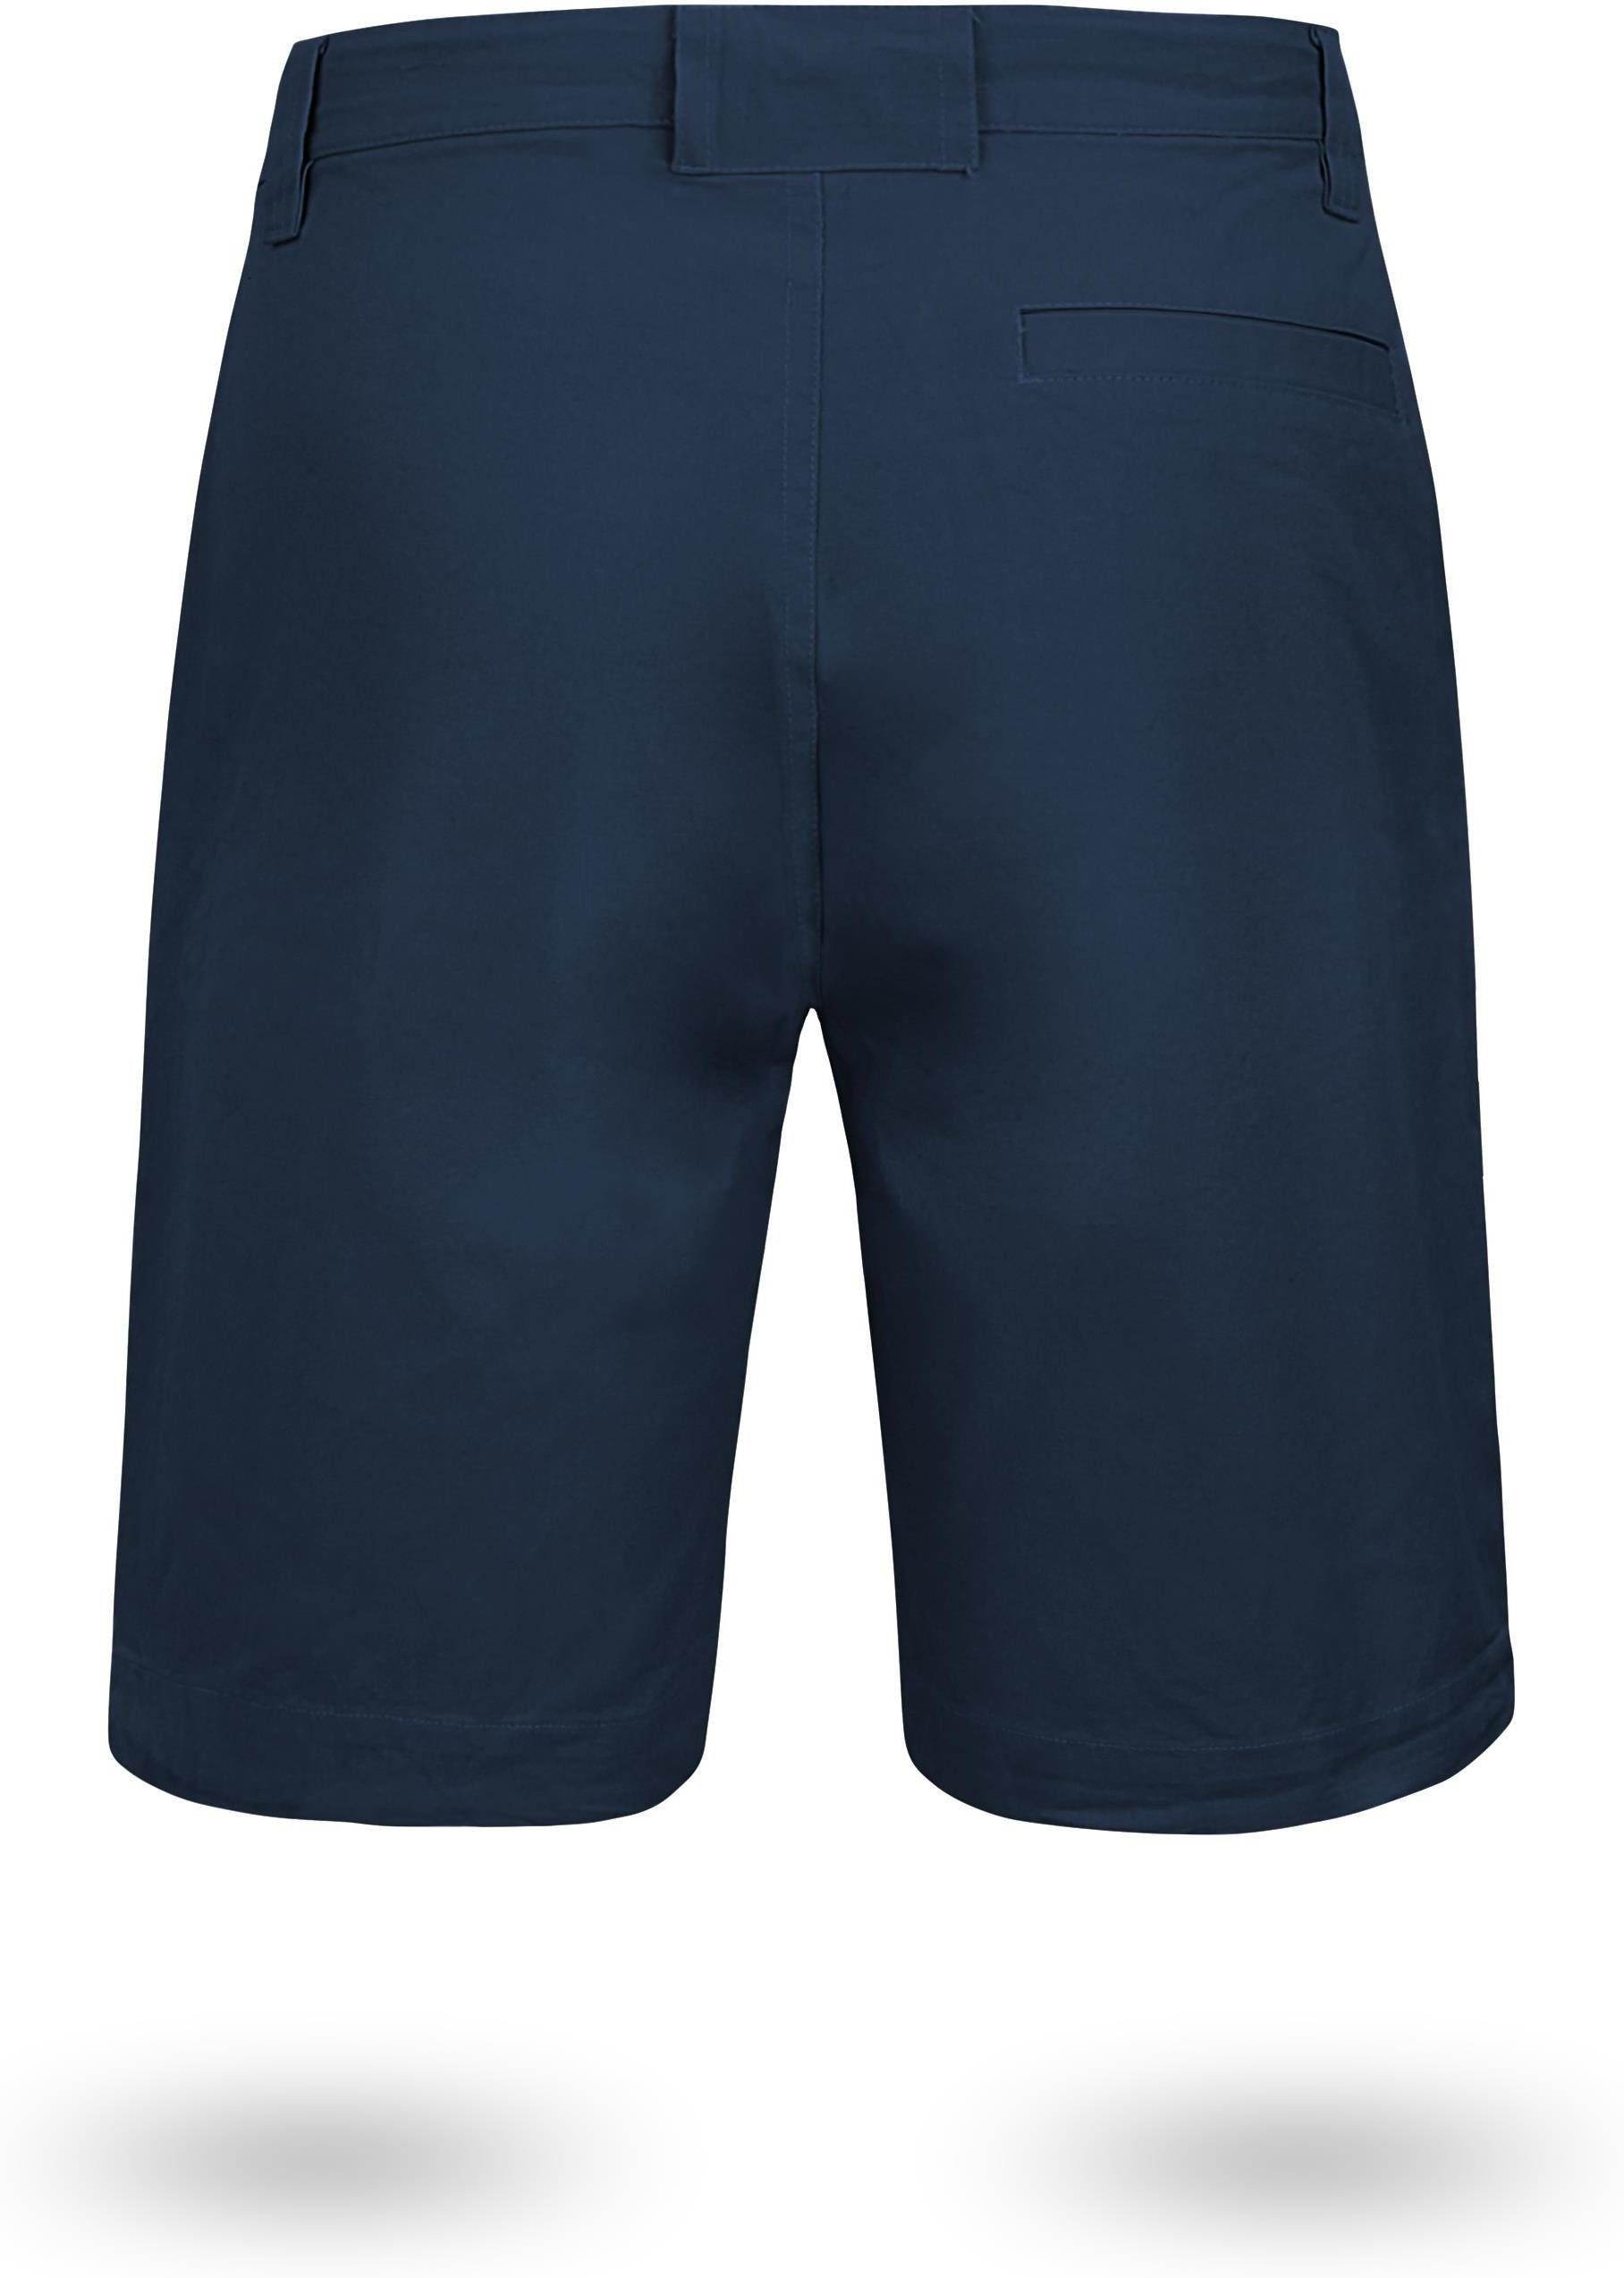 Bio-Baumwolle aus mit 100% Chino normani Zippertasche Vintage kurze Gobi Bermudas Navy Herren Shorts Shorts Sommershort invisible